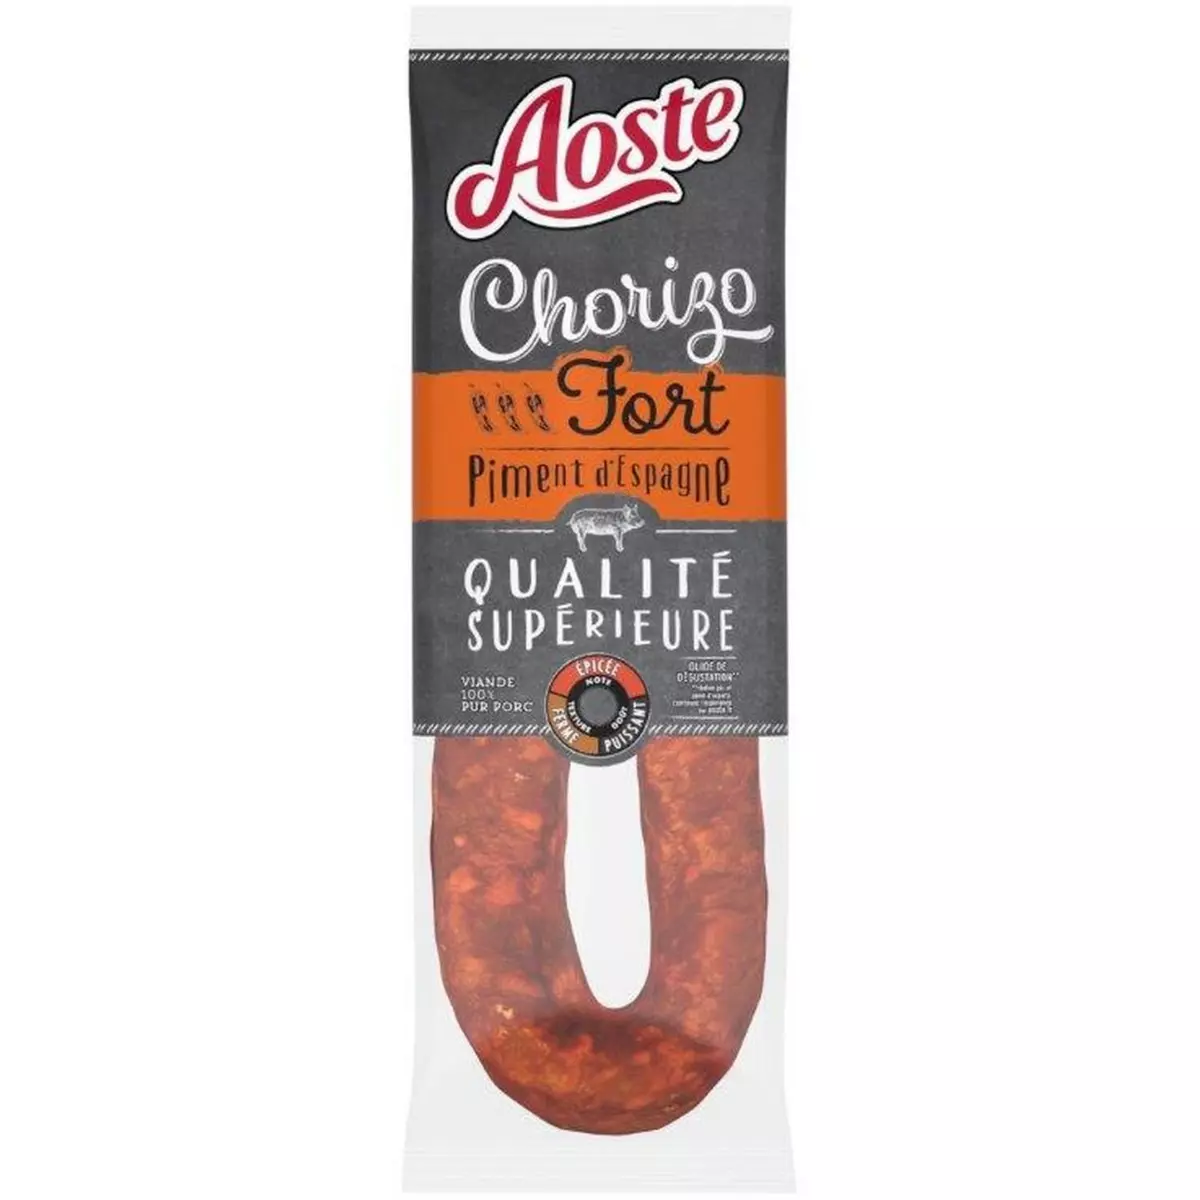 AOSTE Chorizo fort au piment rouge d'Espagne 200g